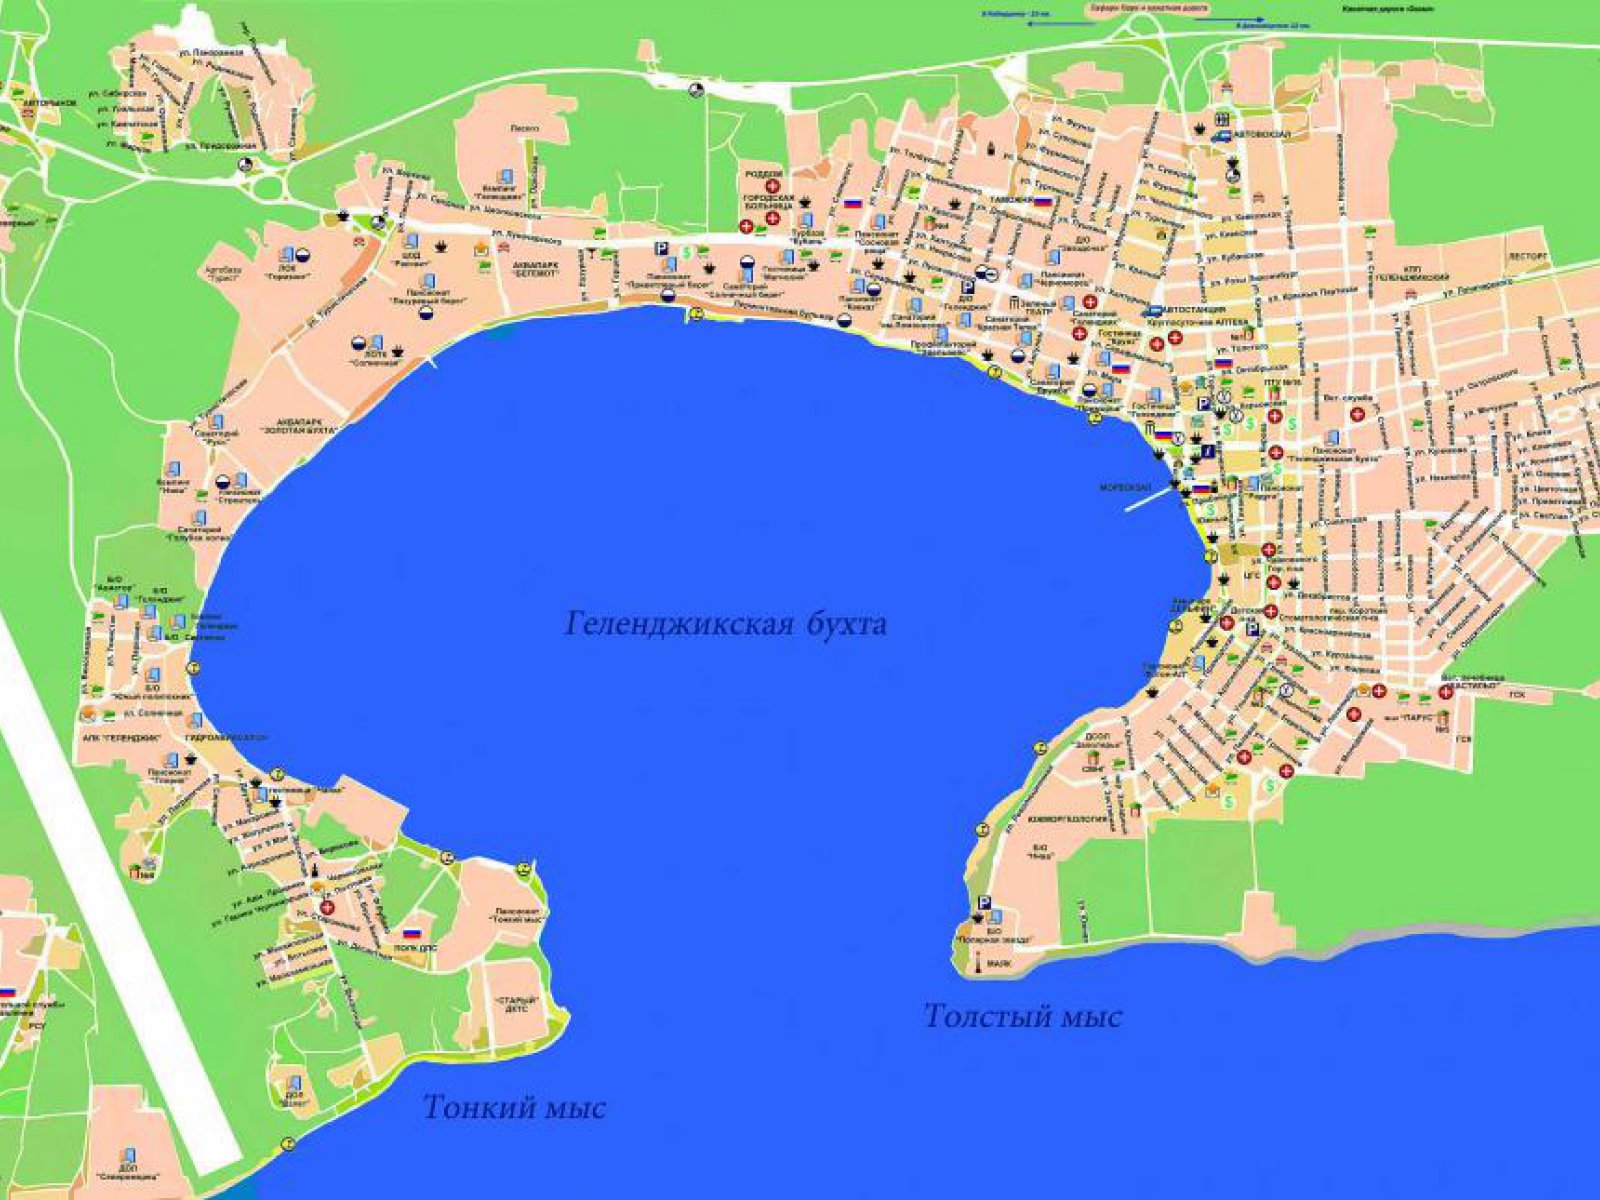 Пляж Тонкий мыс в Геленджике на карте